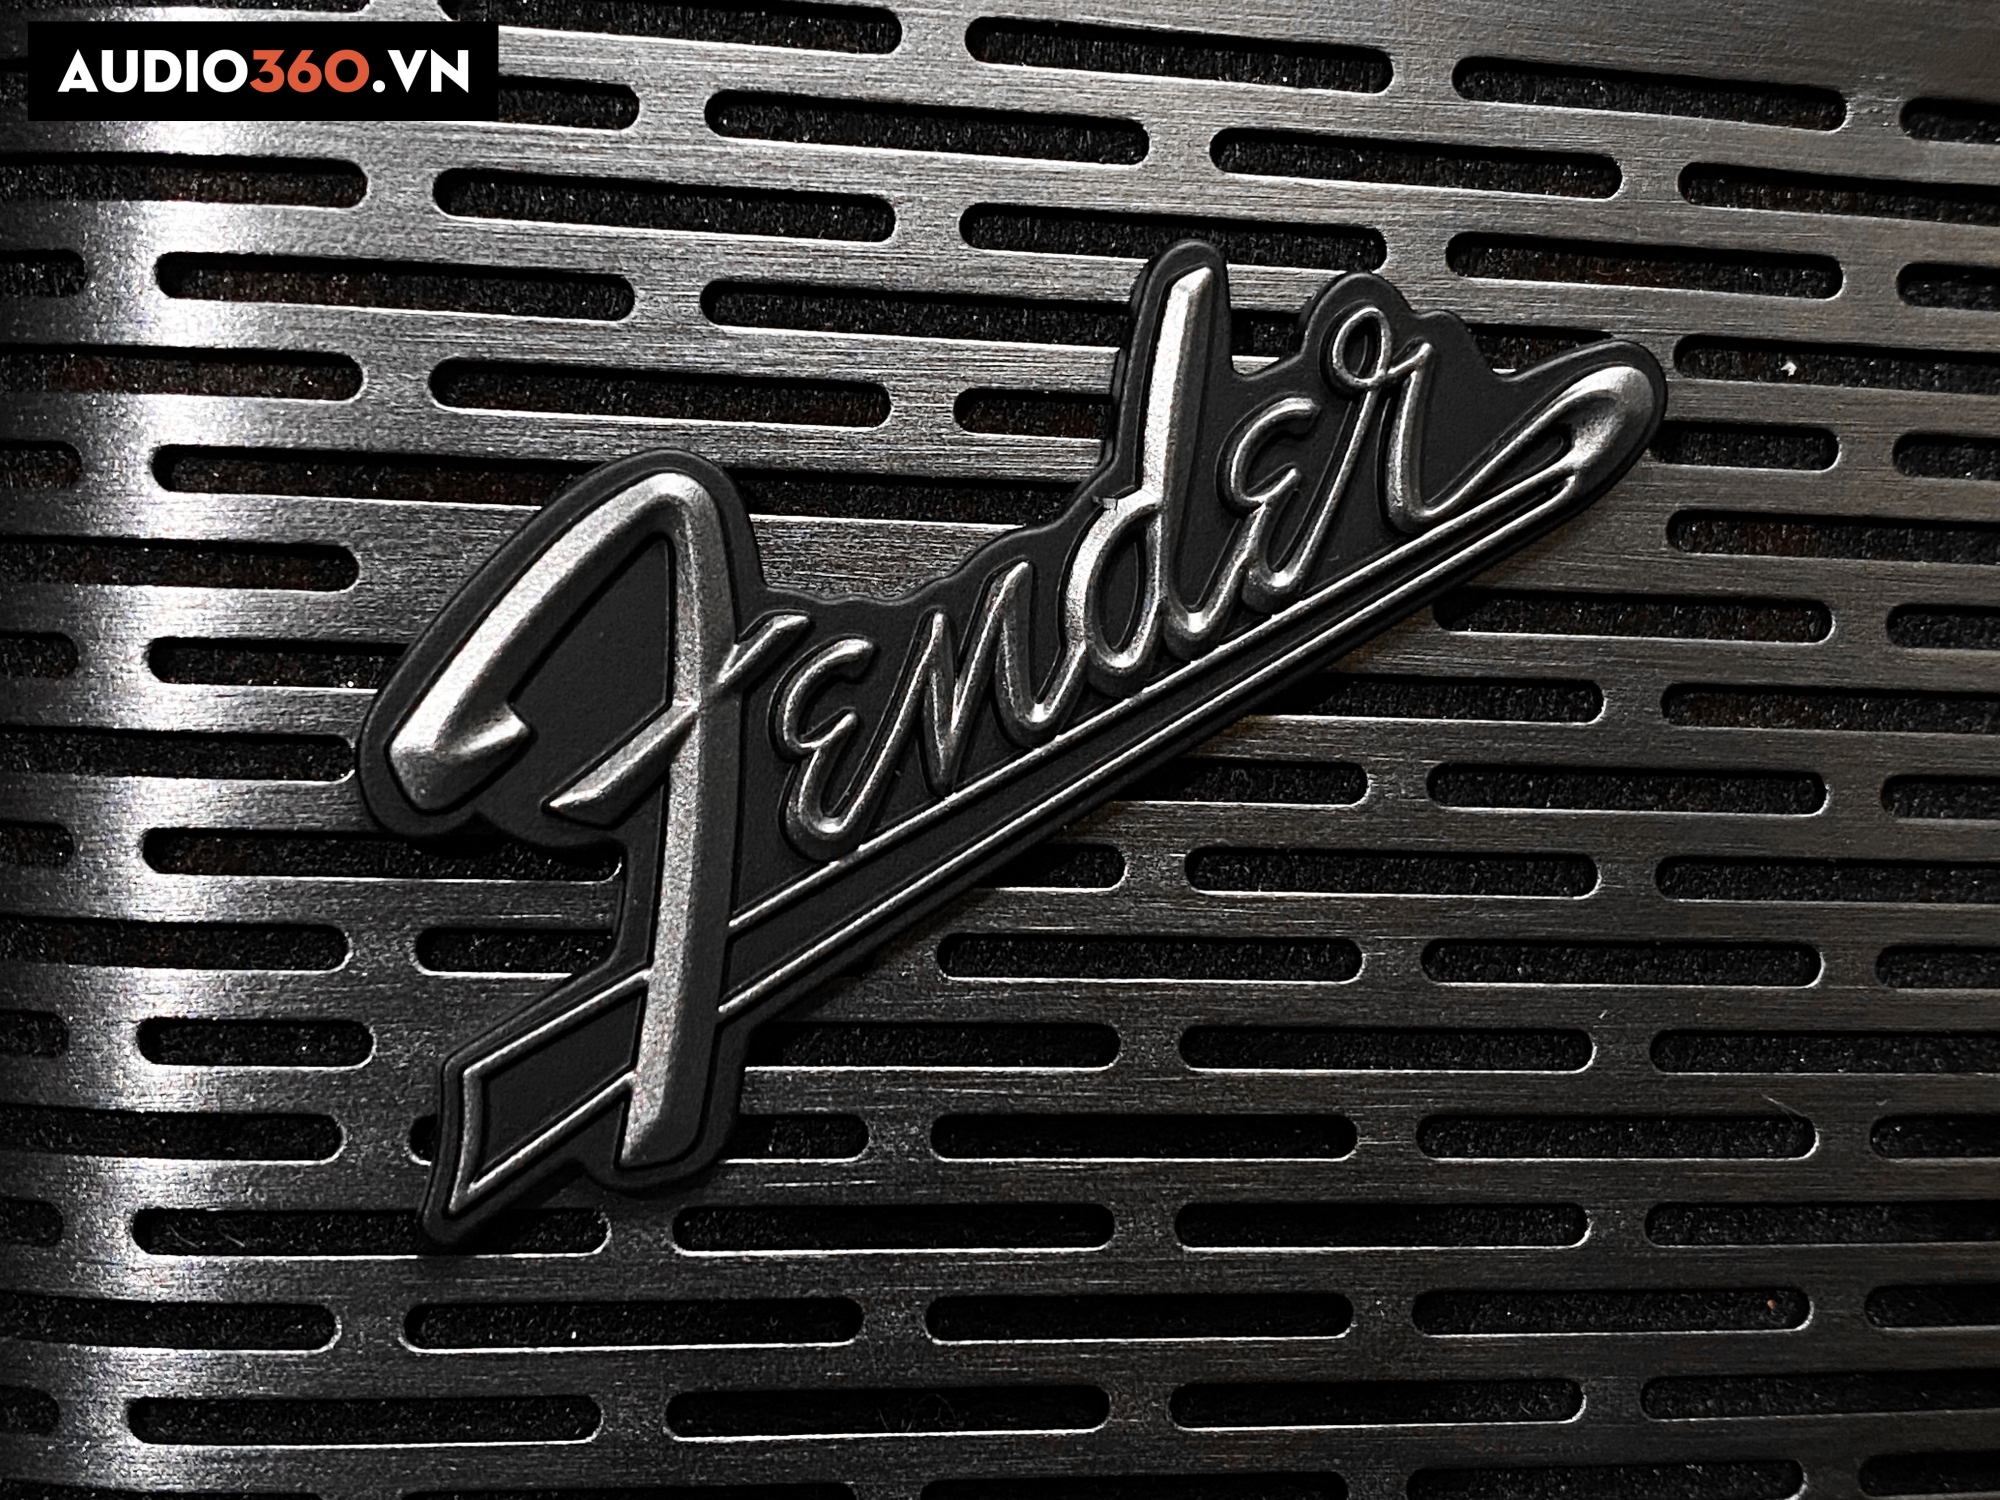 Logo hãng loa Fender đặc trưng, cá tính ở mặt trước loa.